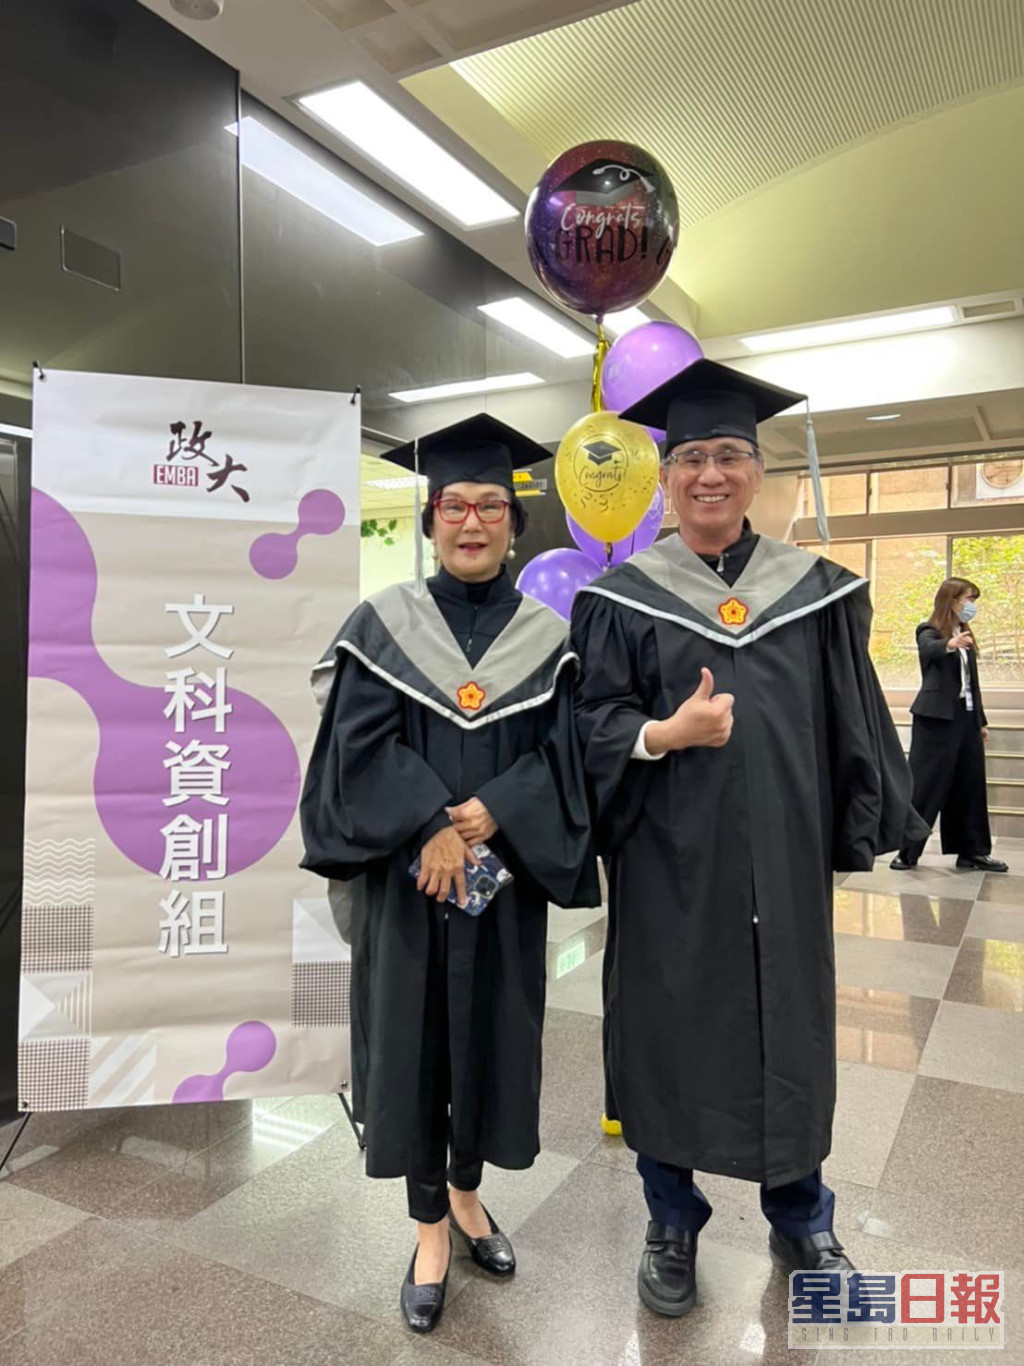 锦曾向传媒透露，当年乳癌复发时被告知剩下3年命，她即报读台湾国立政治大学的EMBA，并于两年内完成课程，一圆大学毕业梦。